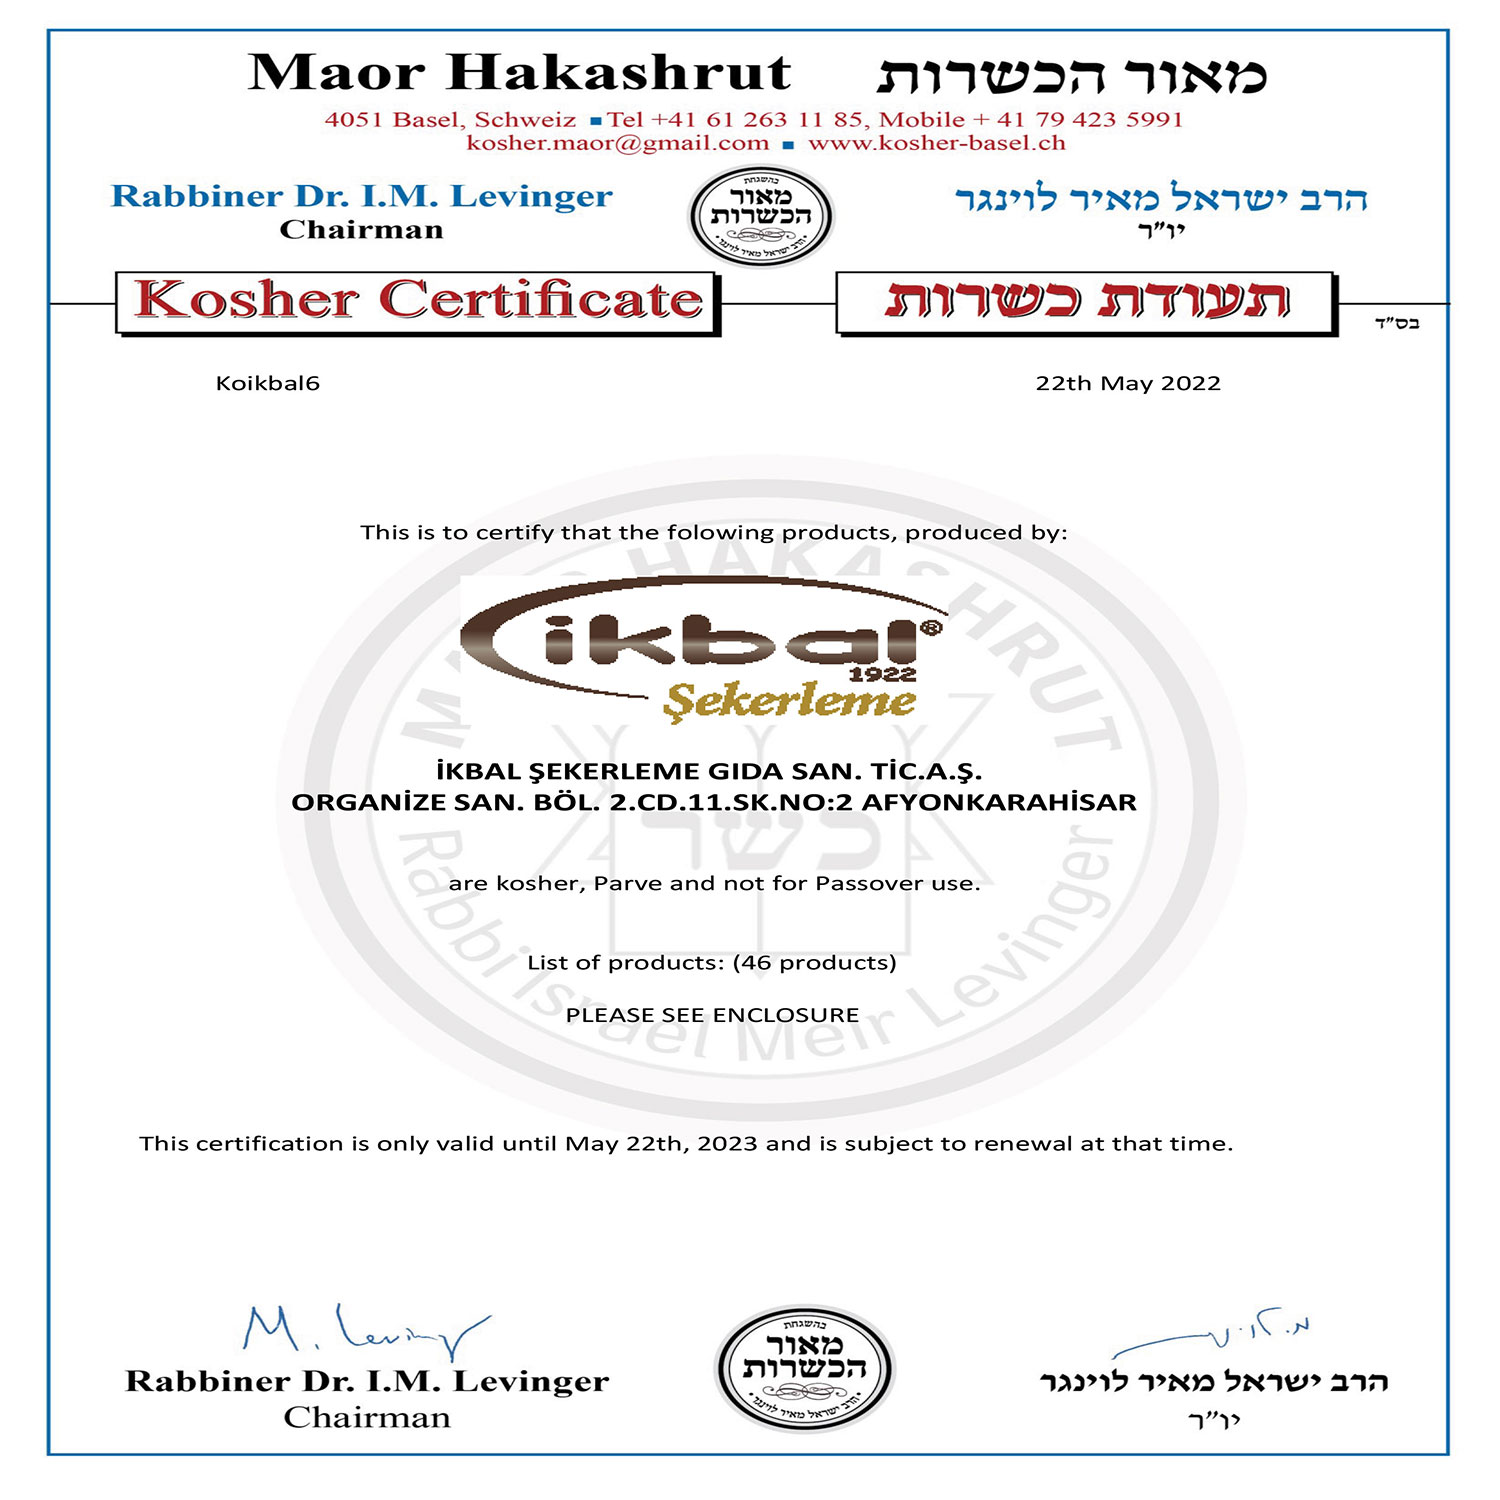 Maor Hakashrut Kosher Certificate 